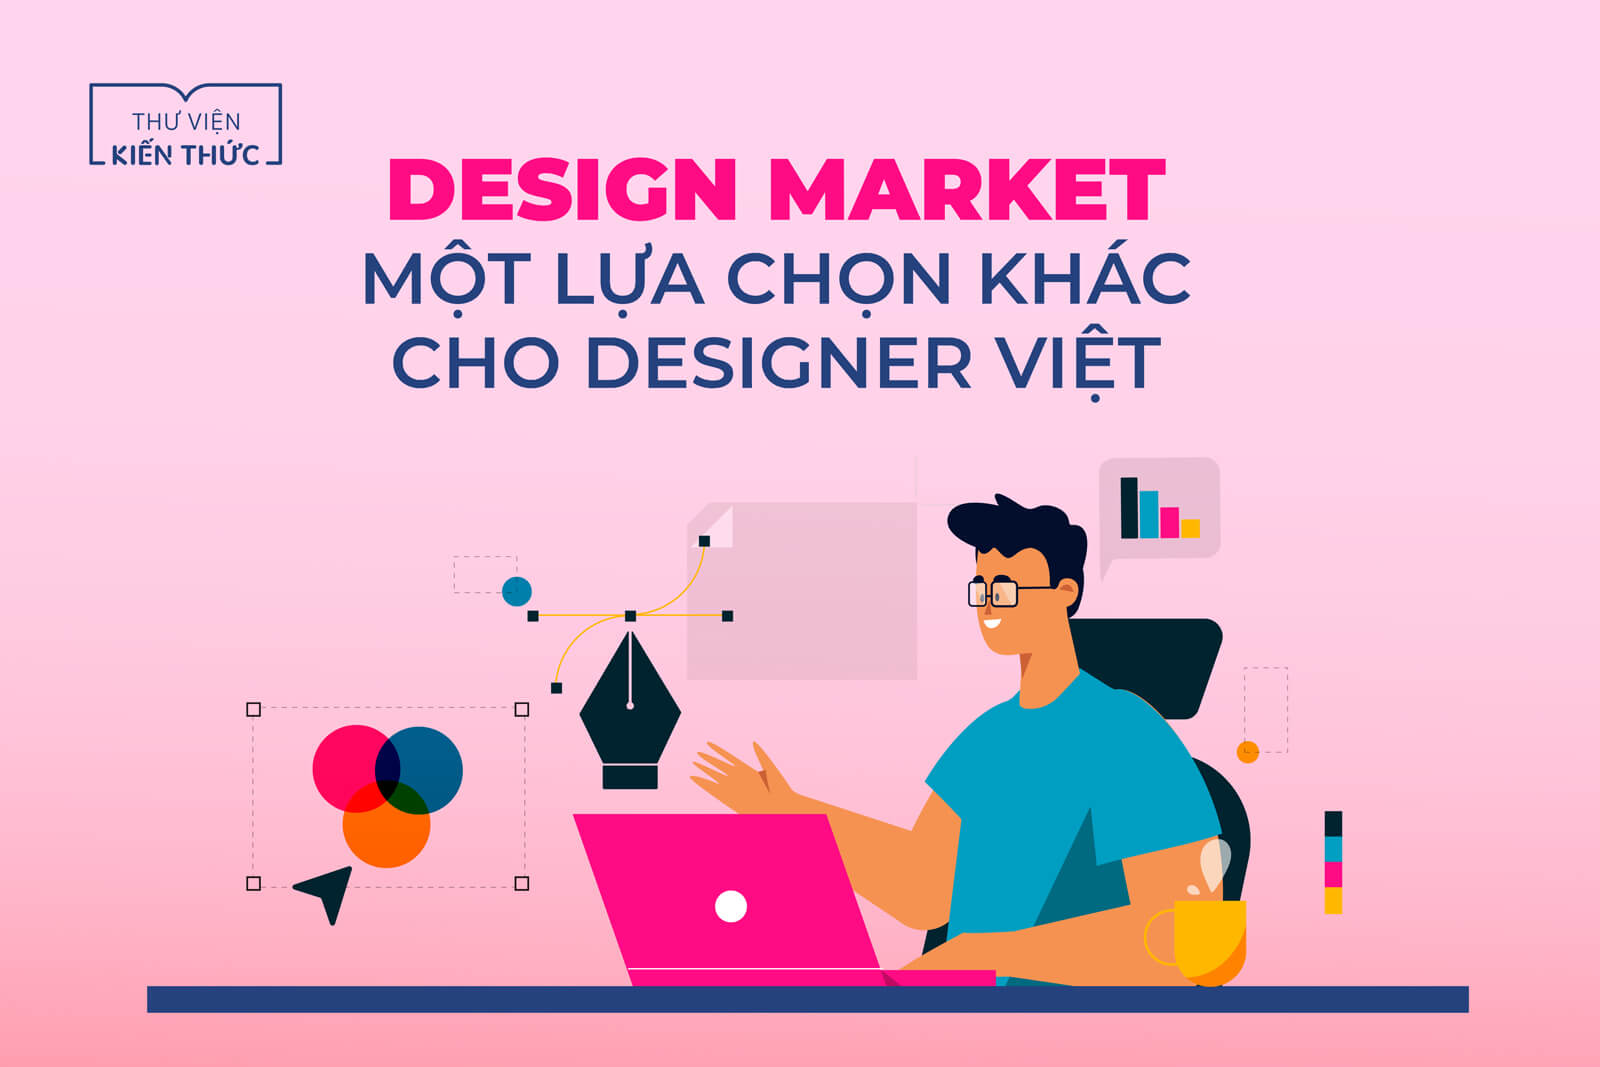 Design Market - Một lựa chọn khác cho Designer Việt